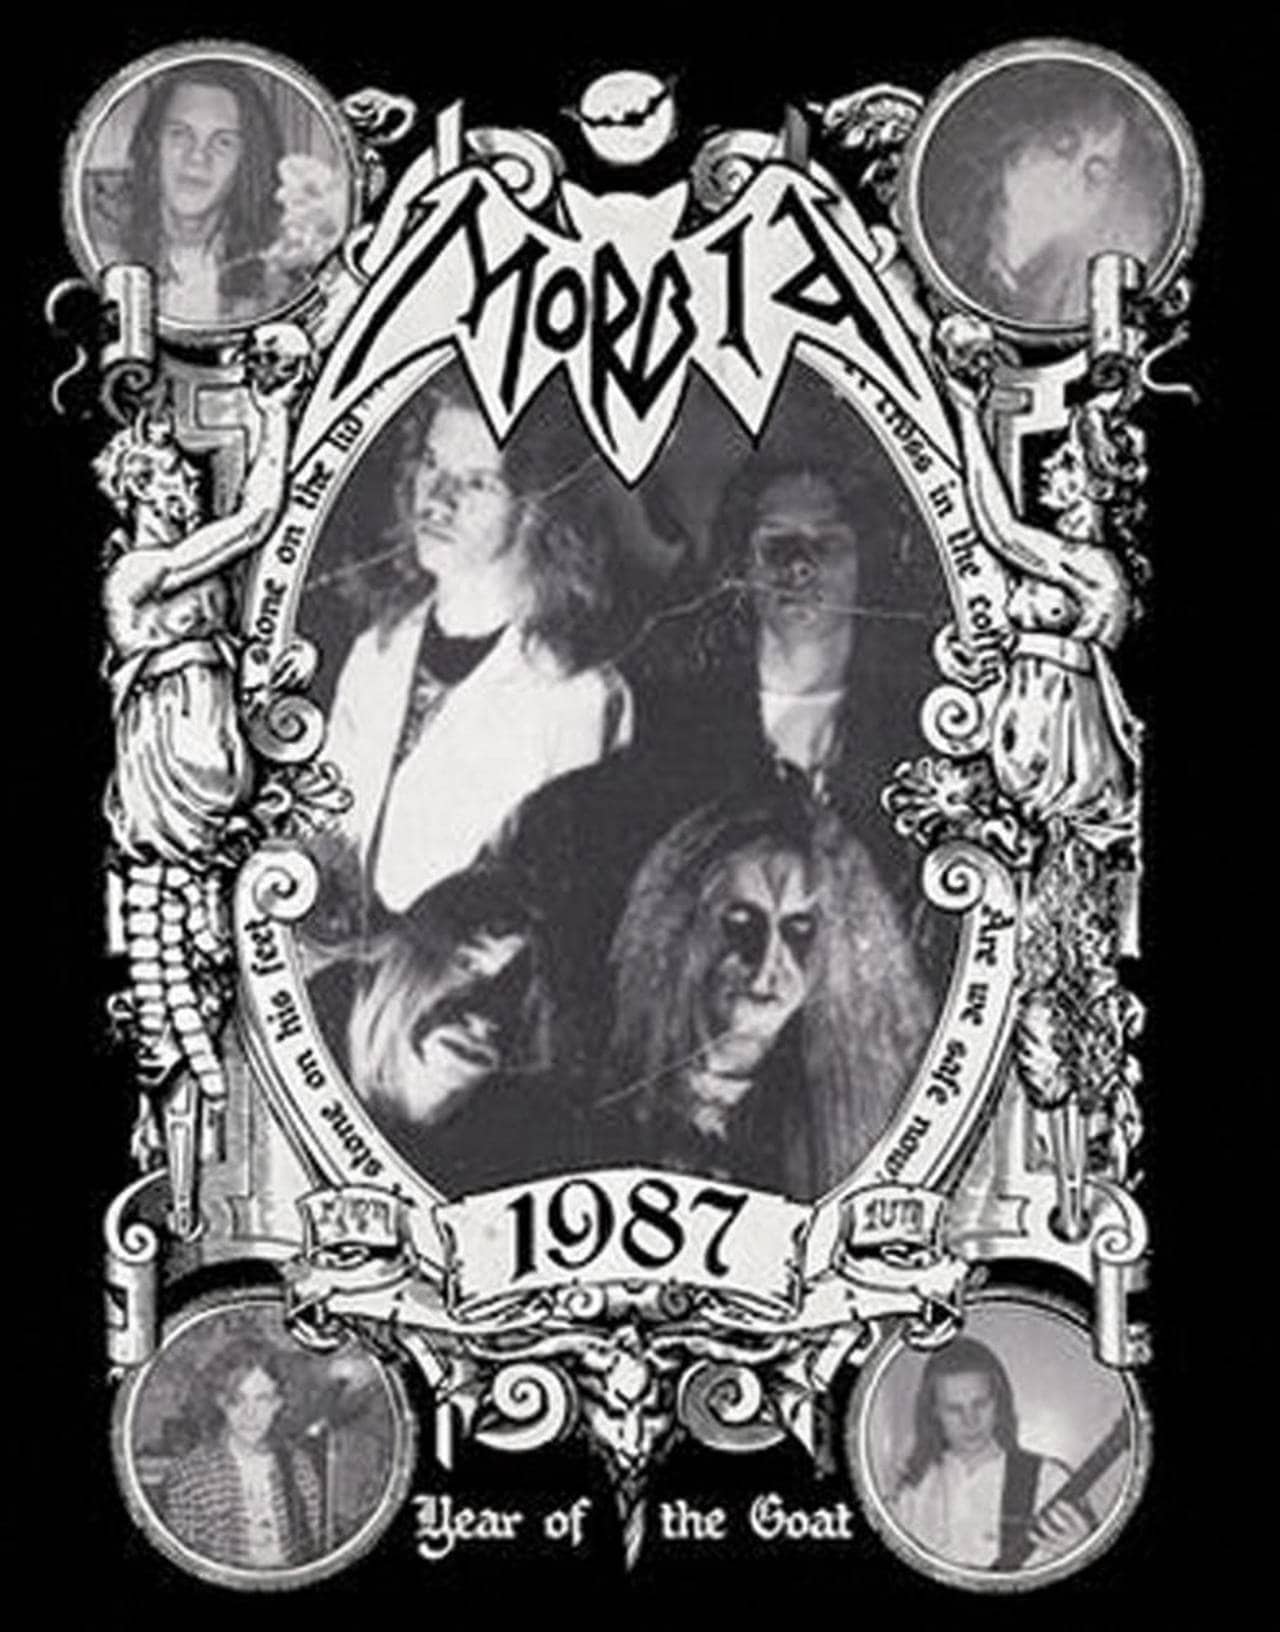 Coveret til Year of the Goat samleplaten til Morbid. På coveret ser du bandets logo og bandmedlemmer i 1987.